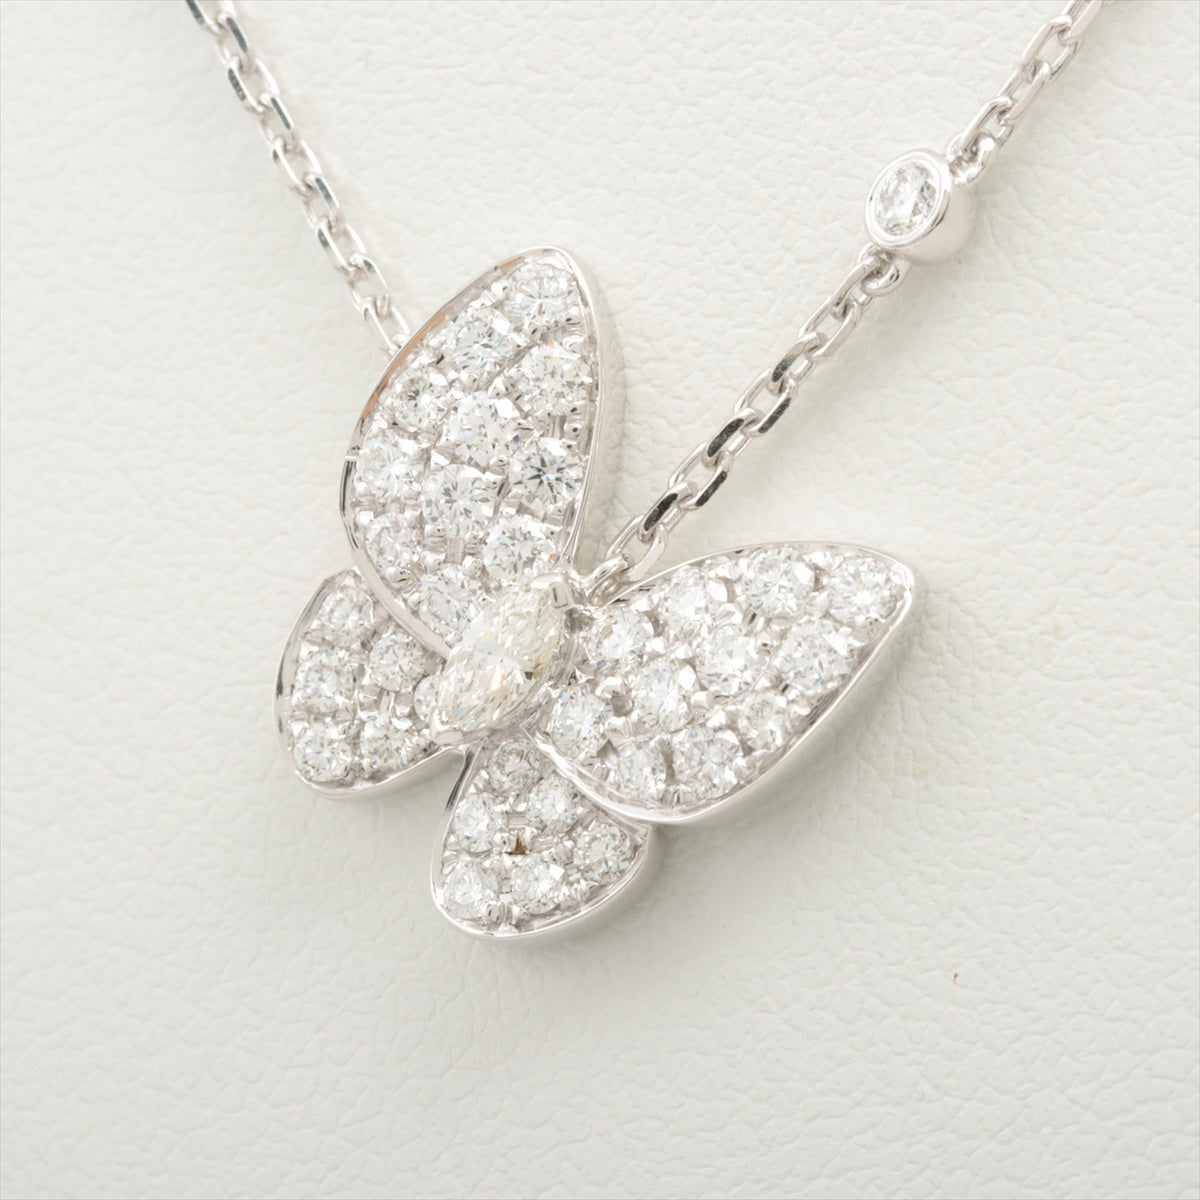 Van Cleef & Arpels Doo Papillon diamond Necklace 750(WG) 5.3g